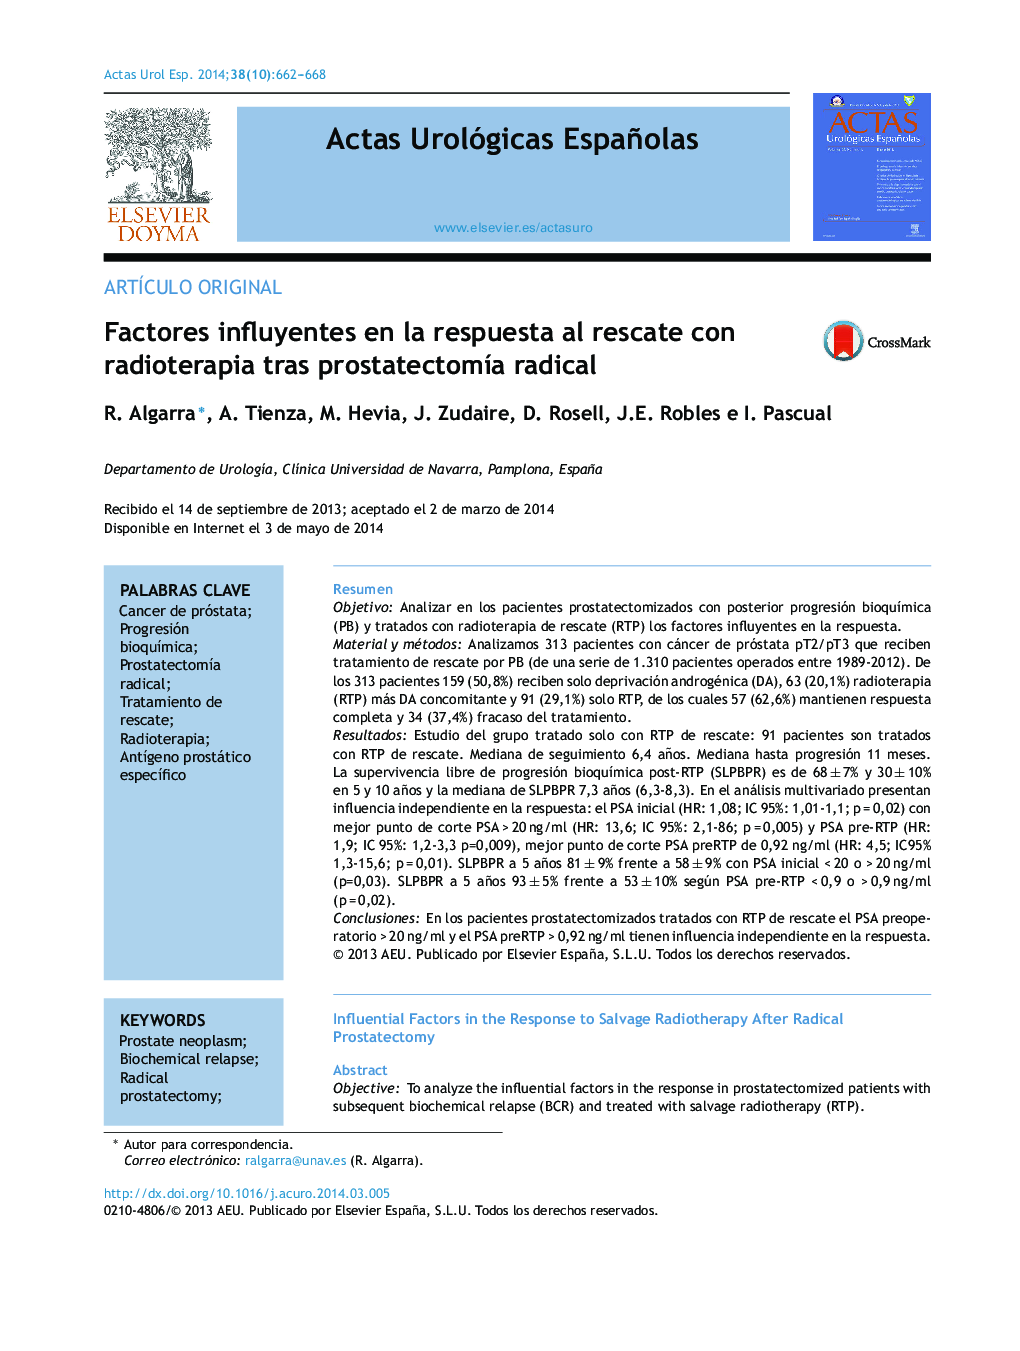 Factores influyentes en la respuesta al rescate con radioterapia tras prostatectomía radical